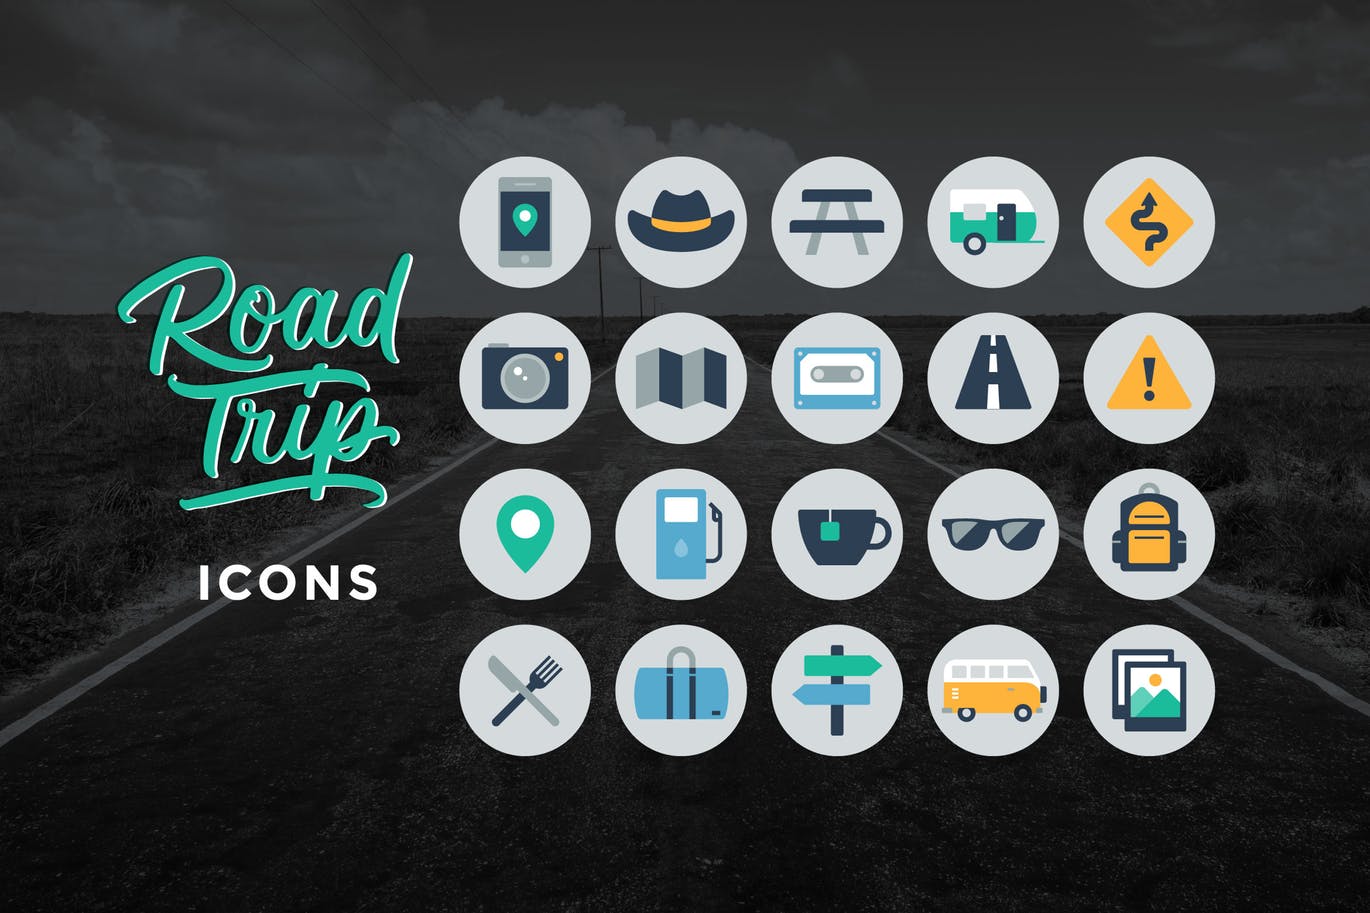 公路旅行主题圆形矢量16图库精选图标 Road Trip Icons插图